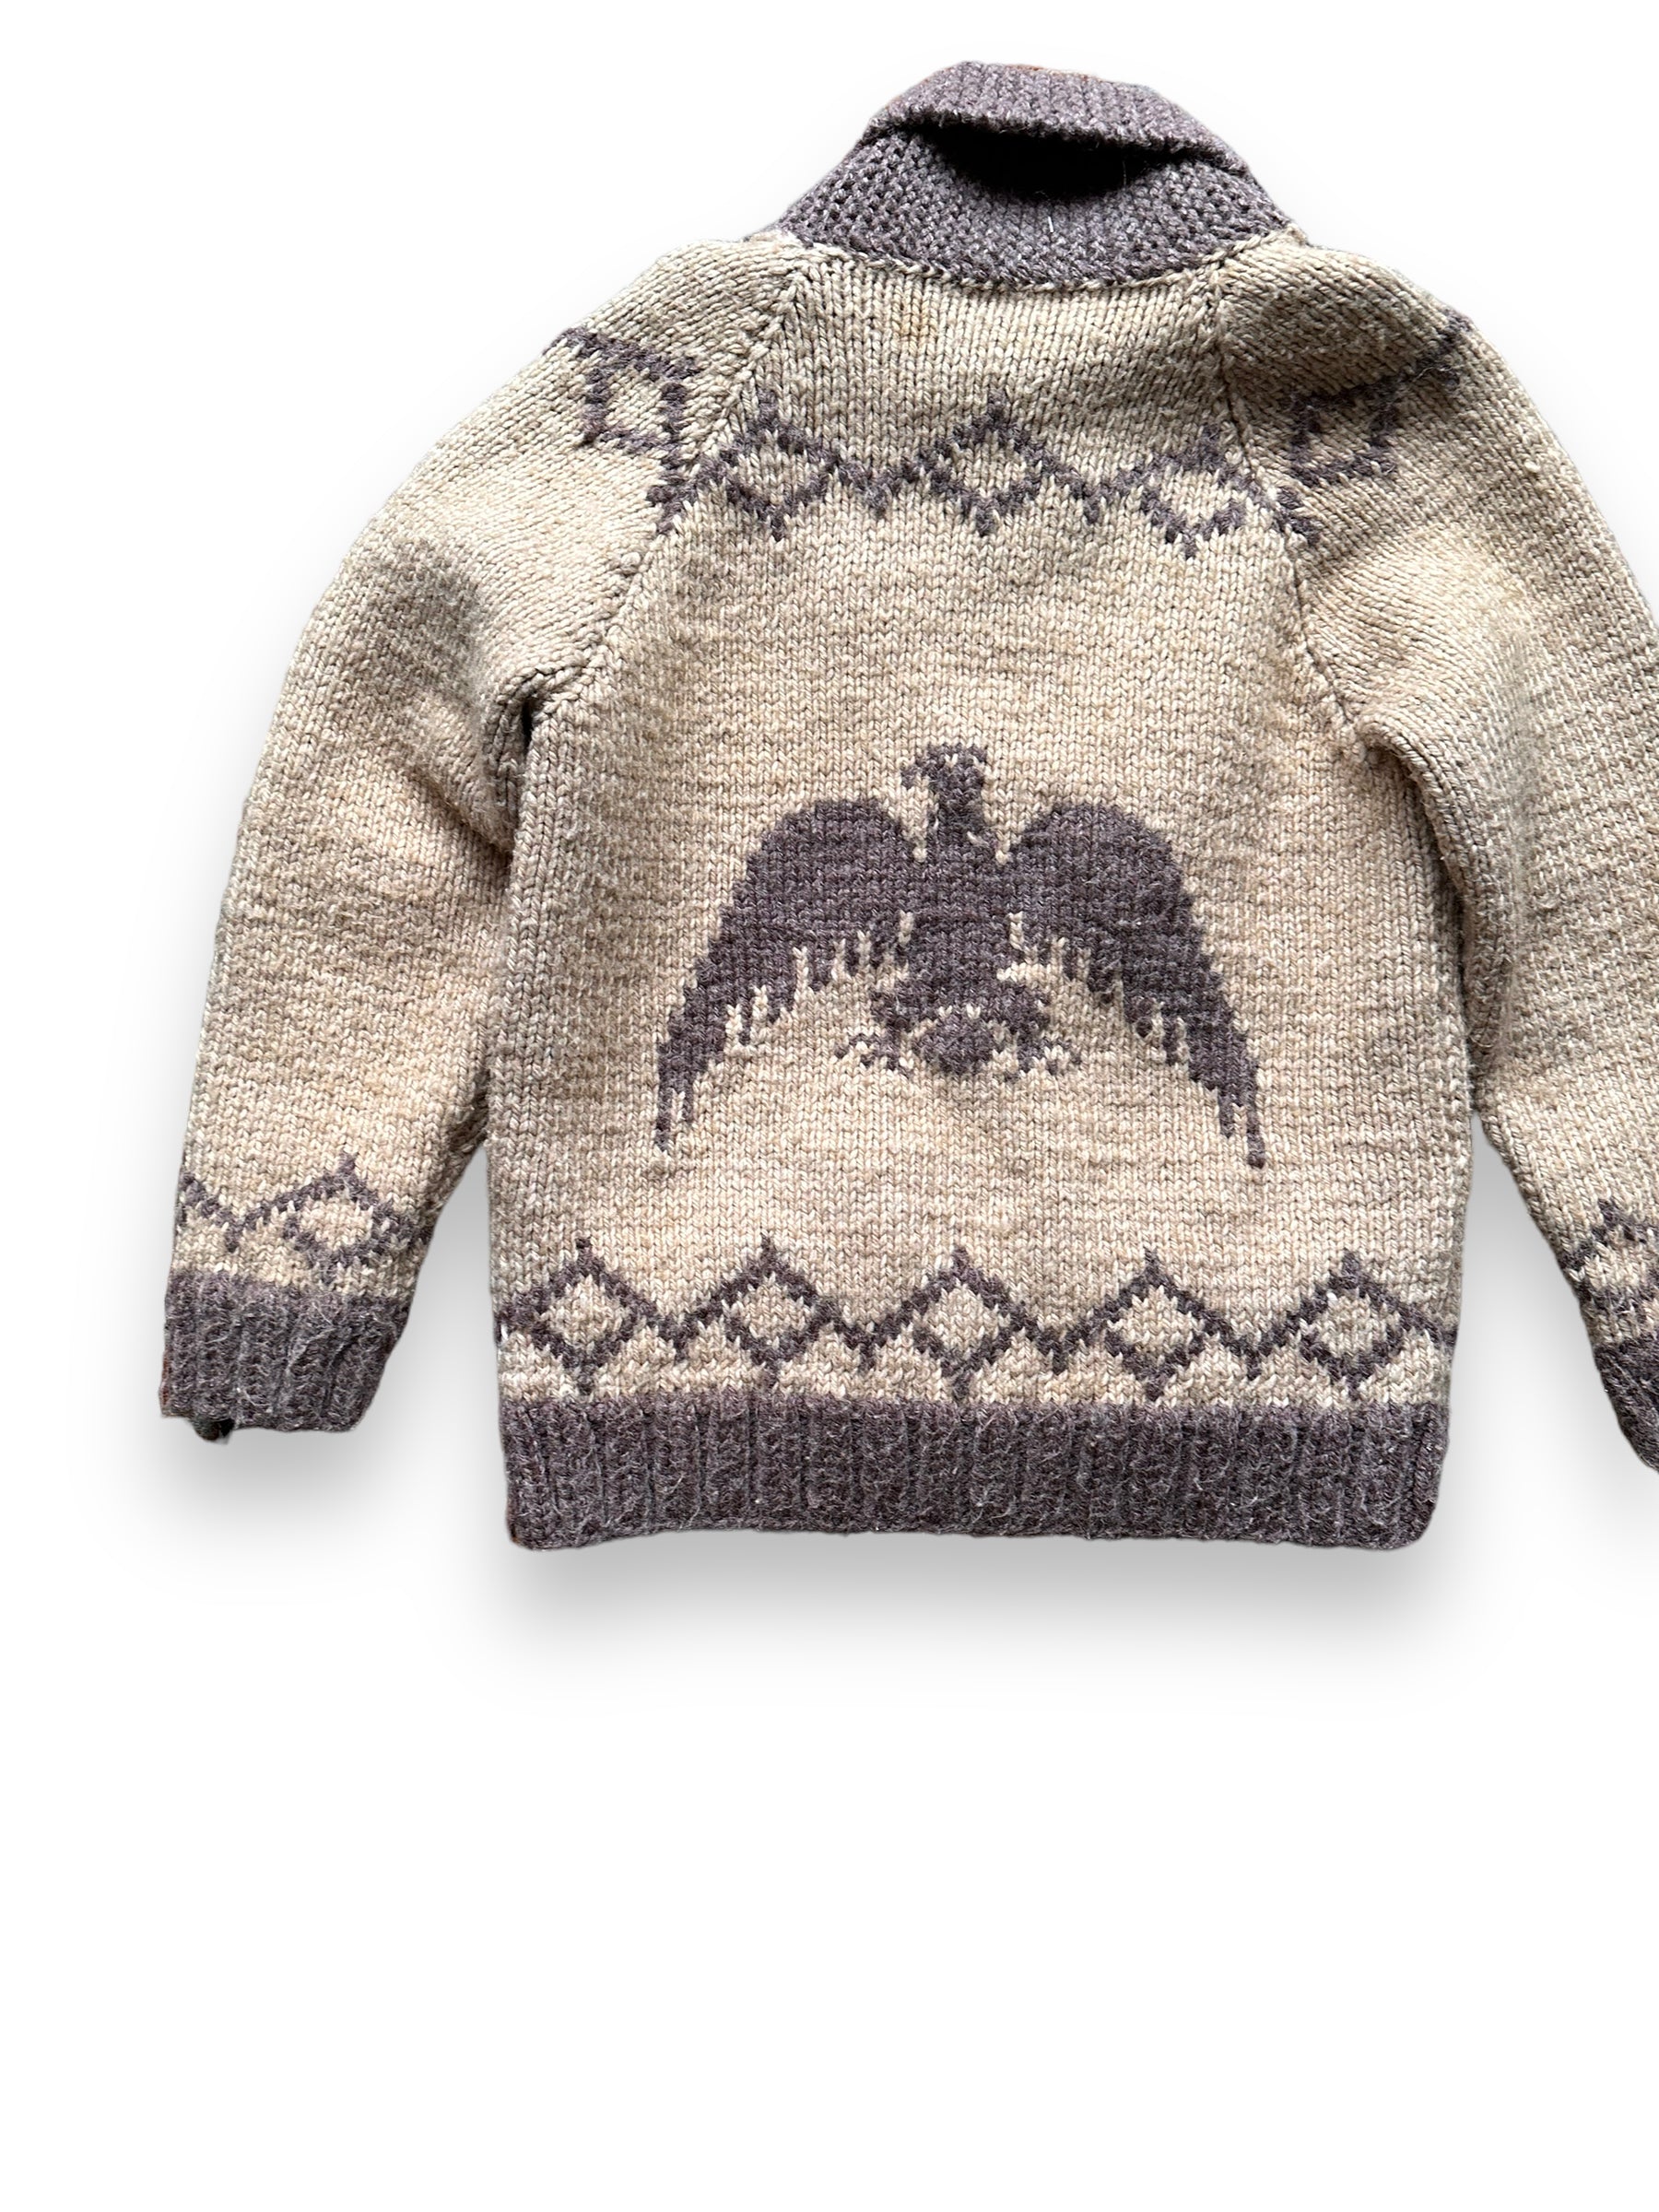 Vintage Eagle Cowichan Sweater SZ M | Vintage Cowichan Sweaters Seattle |  Barn Owl Vintage Seattle